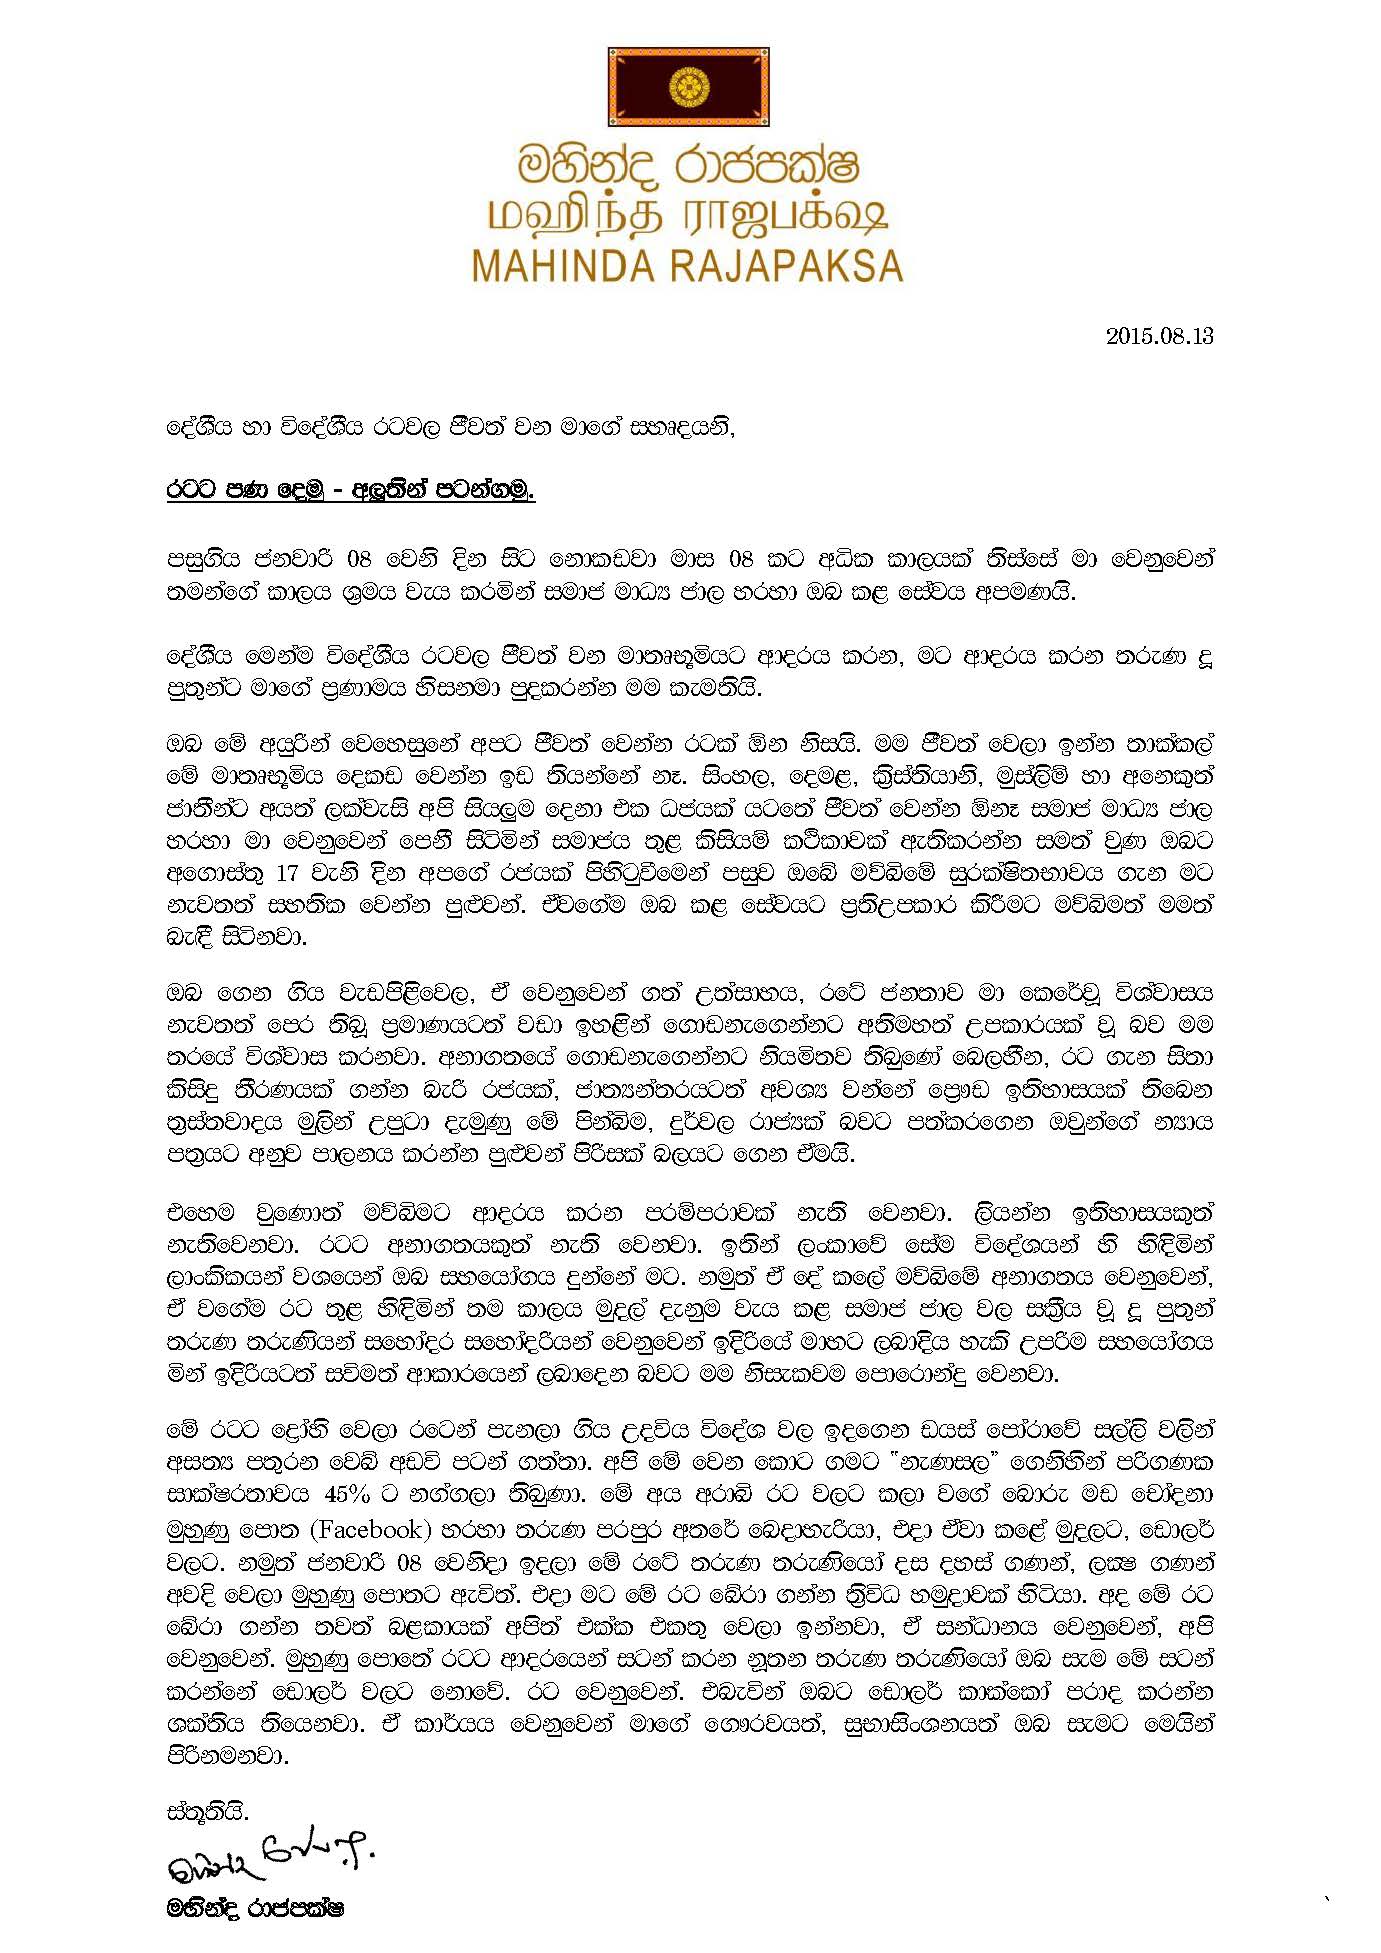 Rajapaksa Thanks Facebook Campaigners (FULL LETTER)